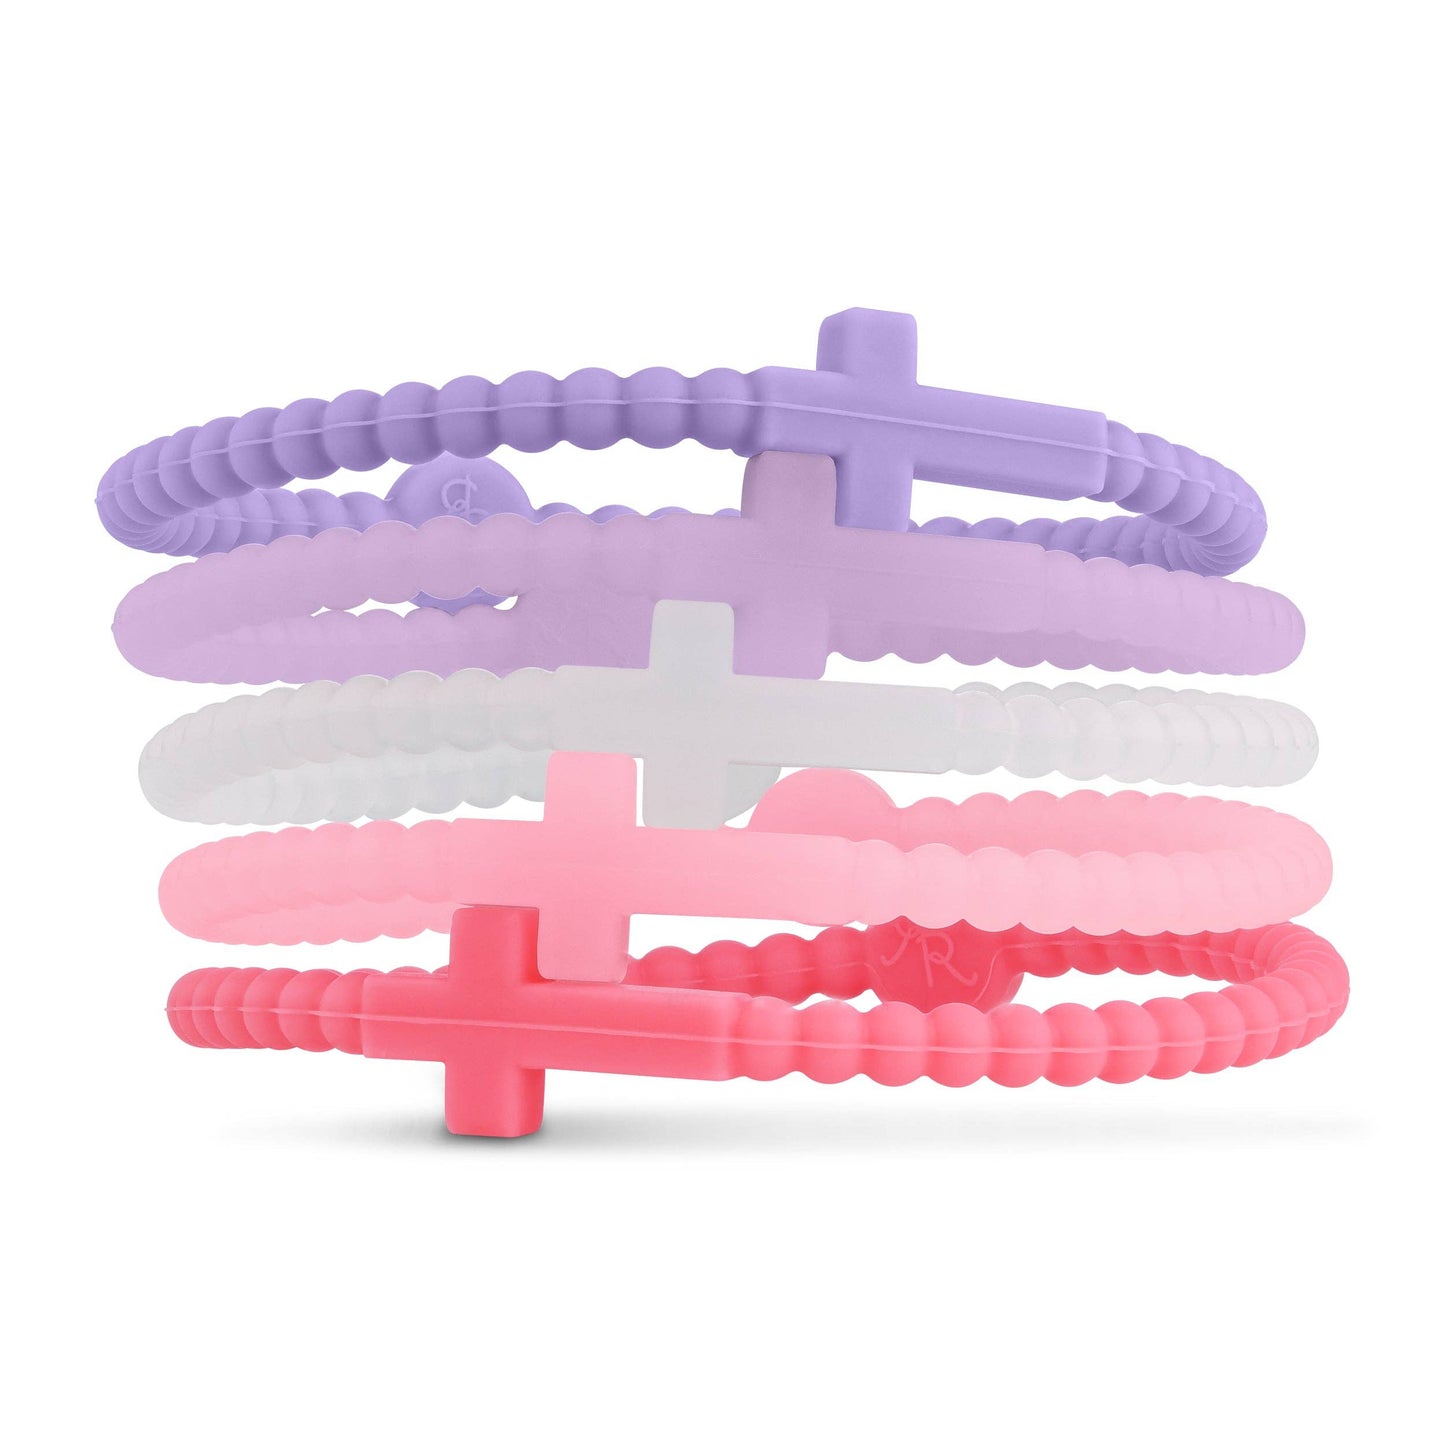 Jesus Bracelets (Cross Bracelets): Dreamy (5 pack) / Large